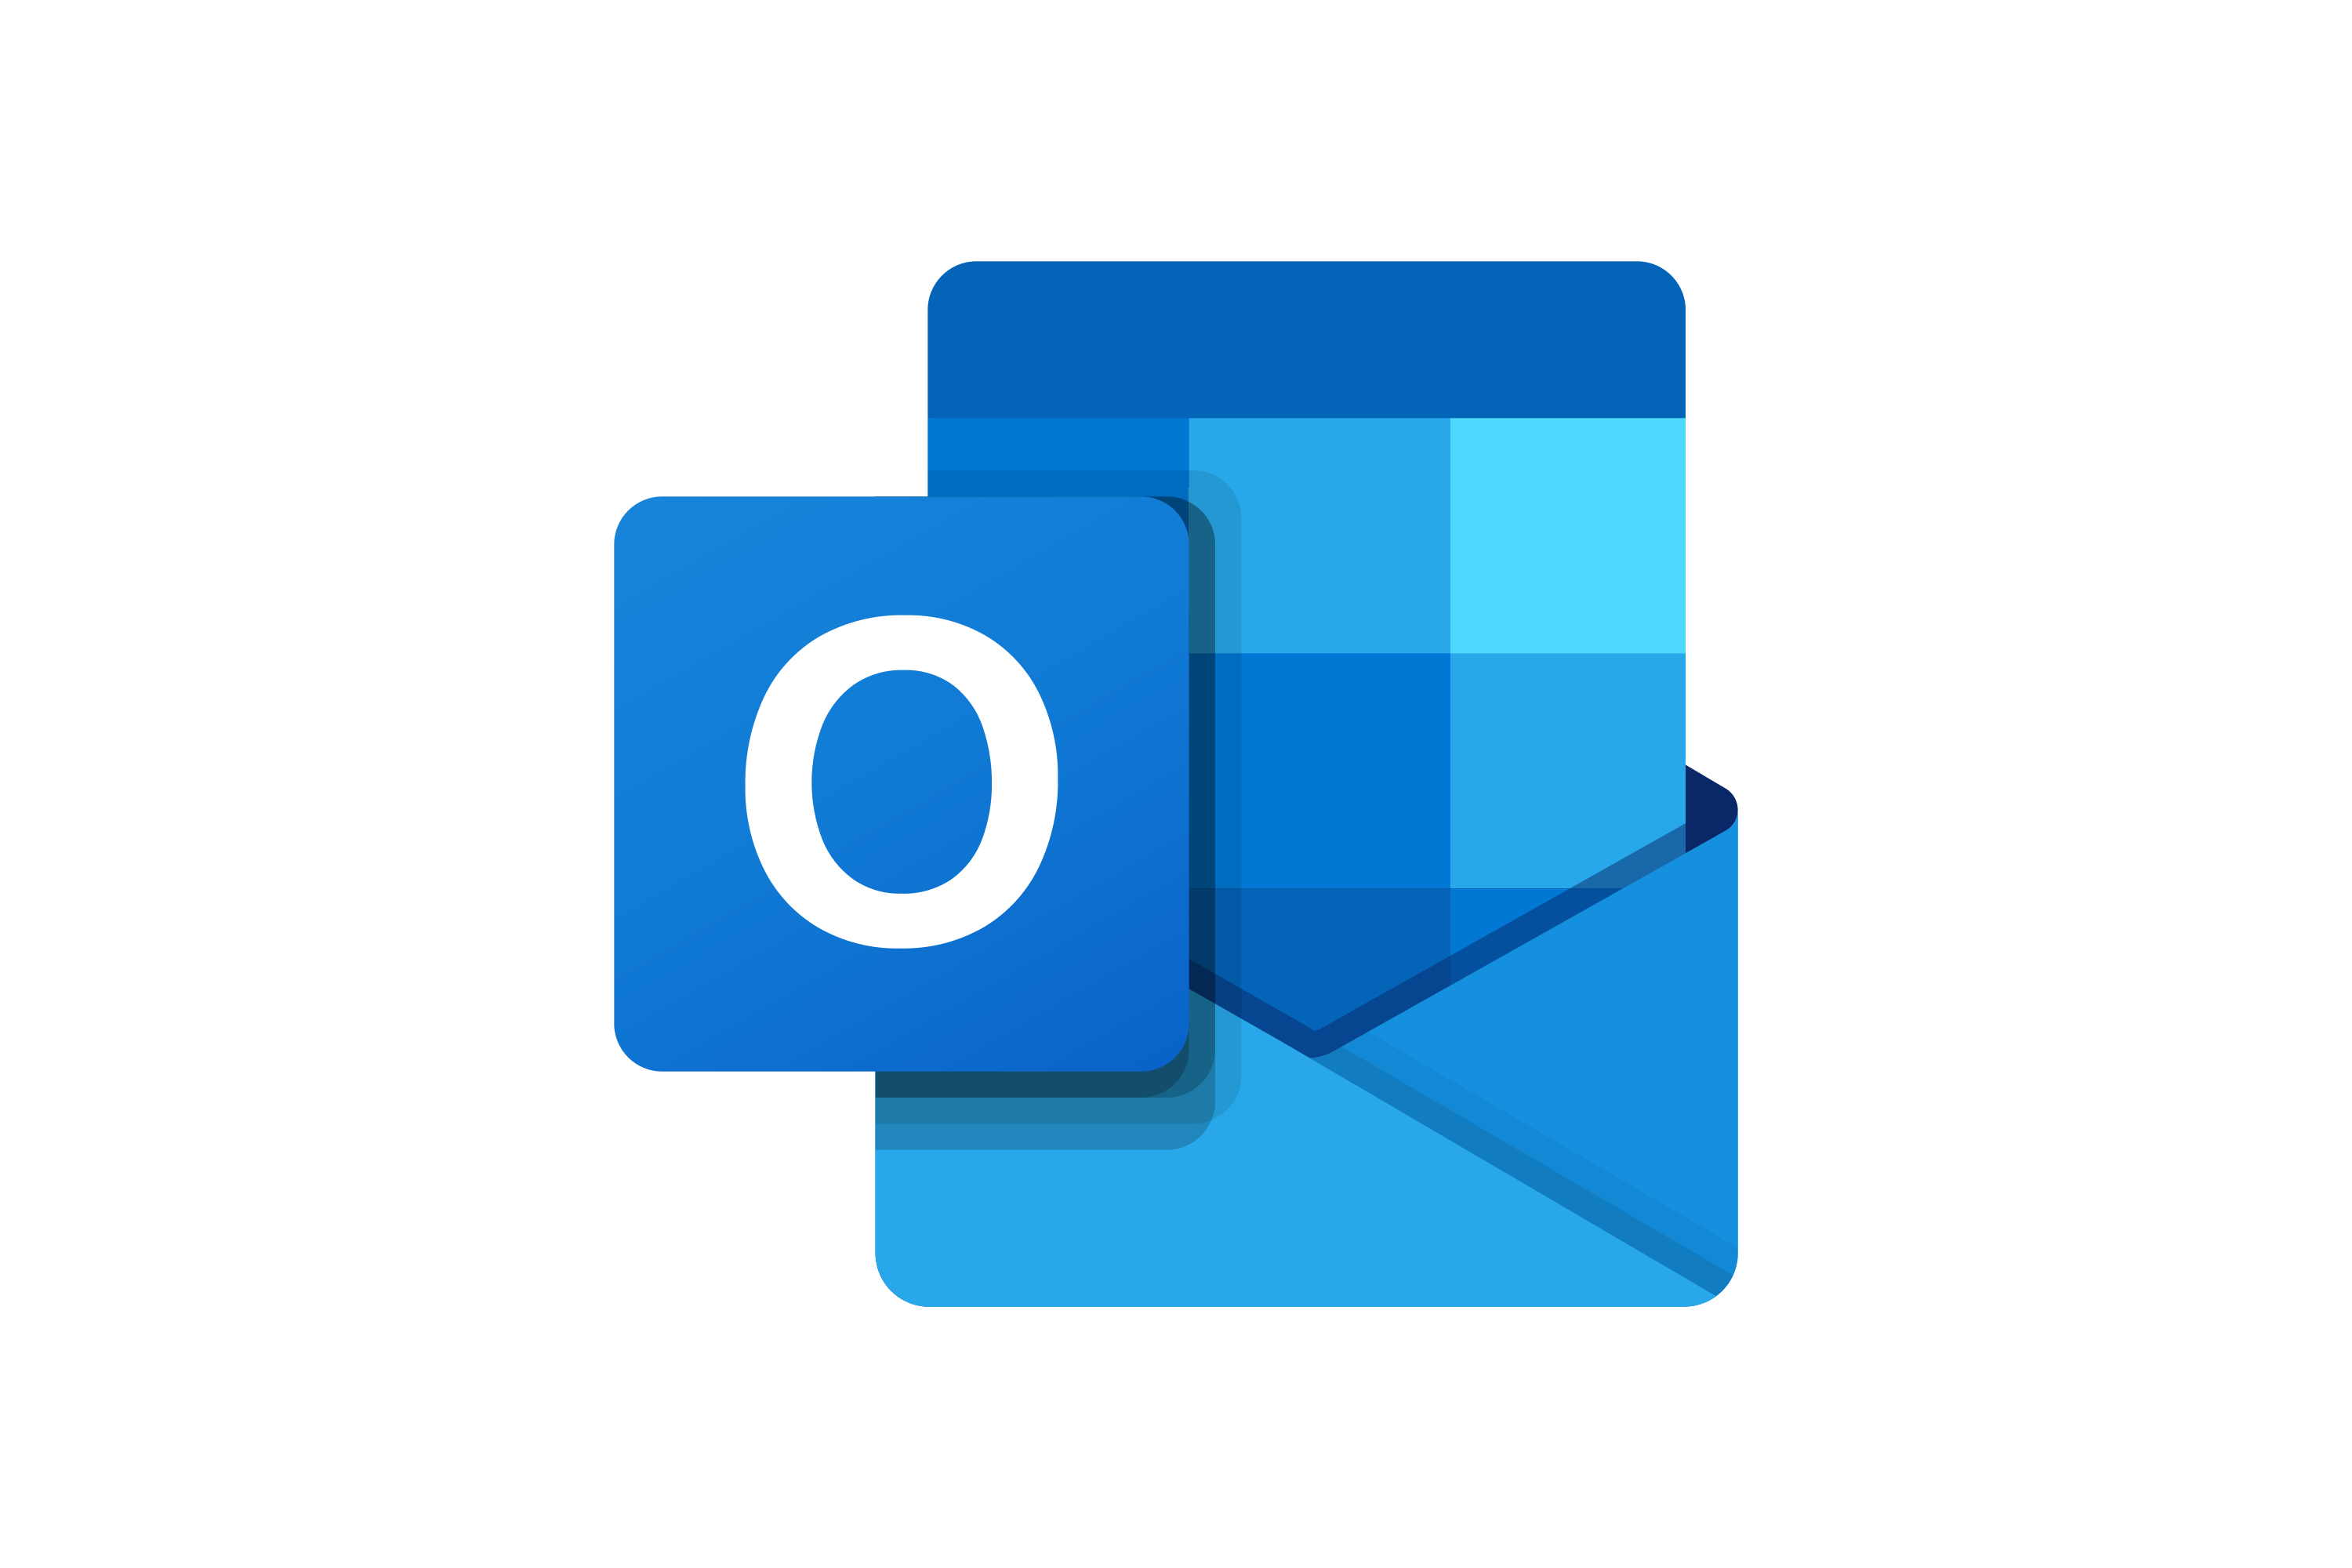 Microsoft Outlook Logo, Outlo